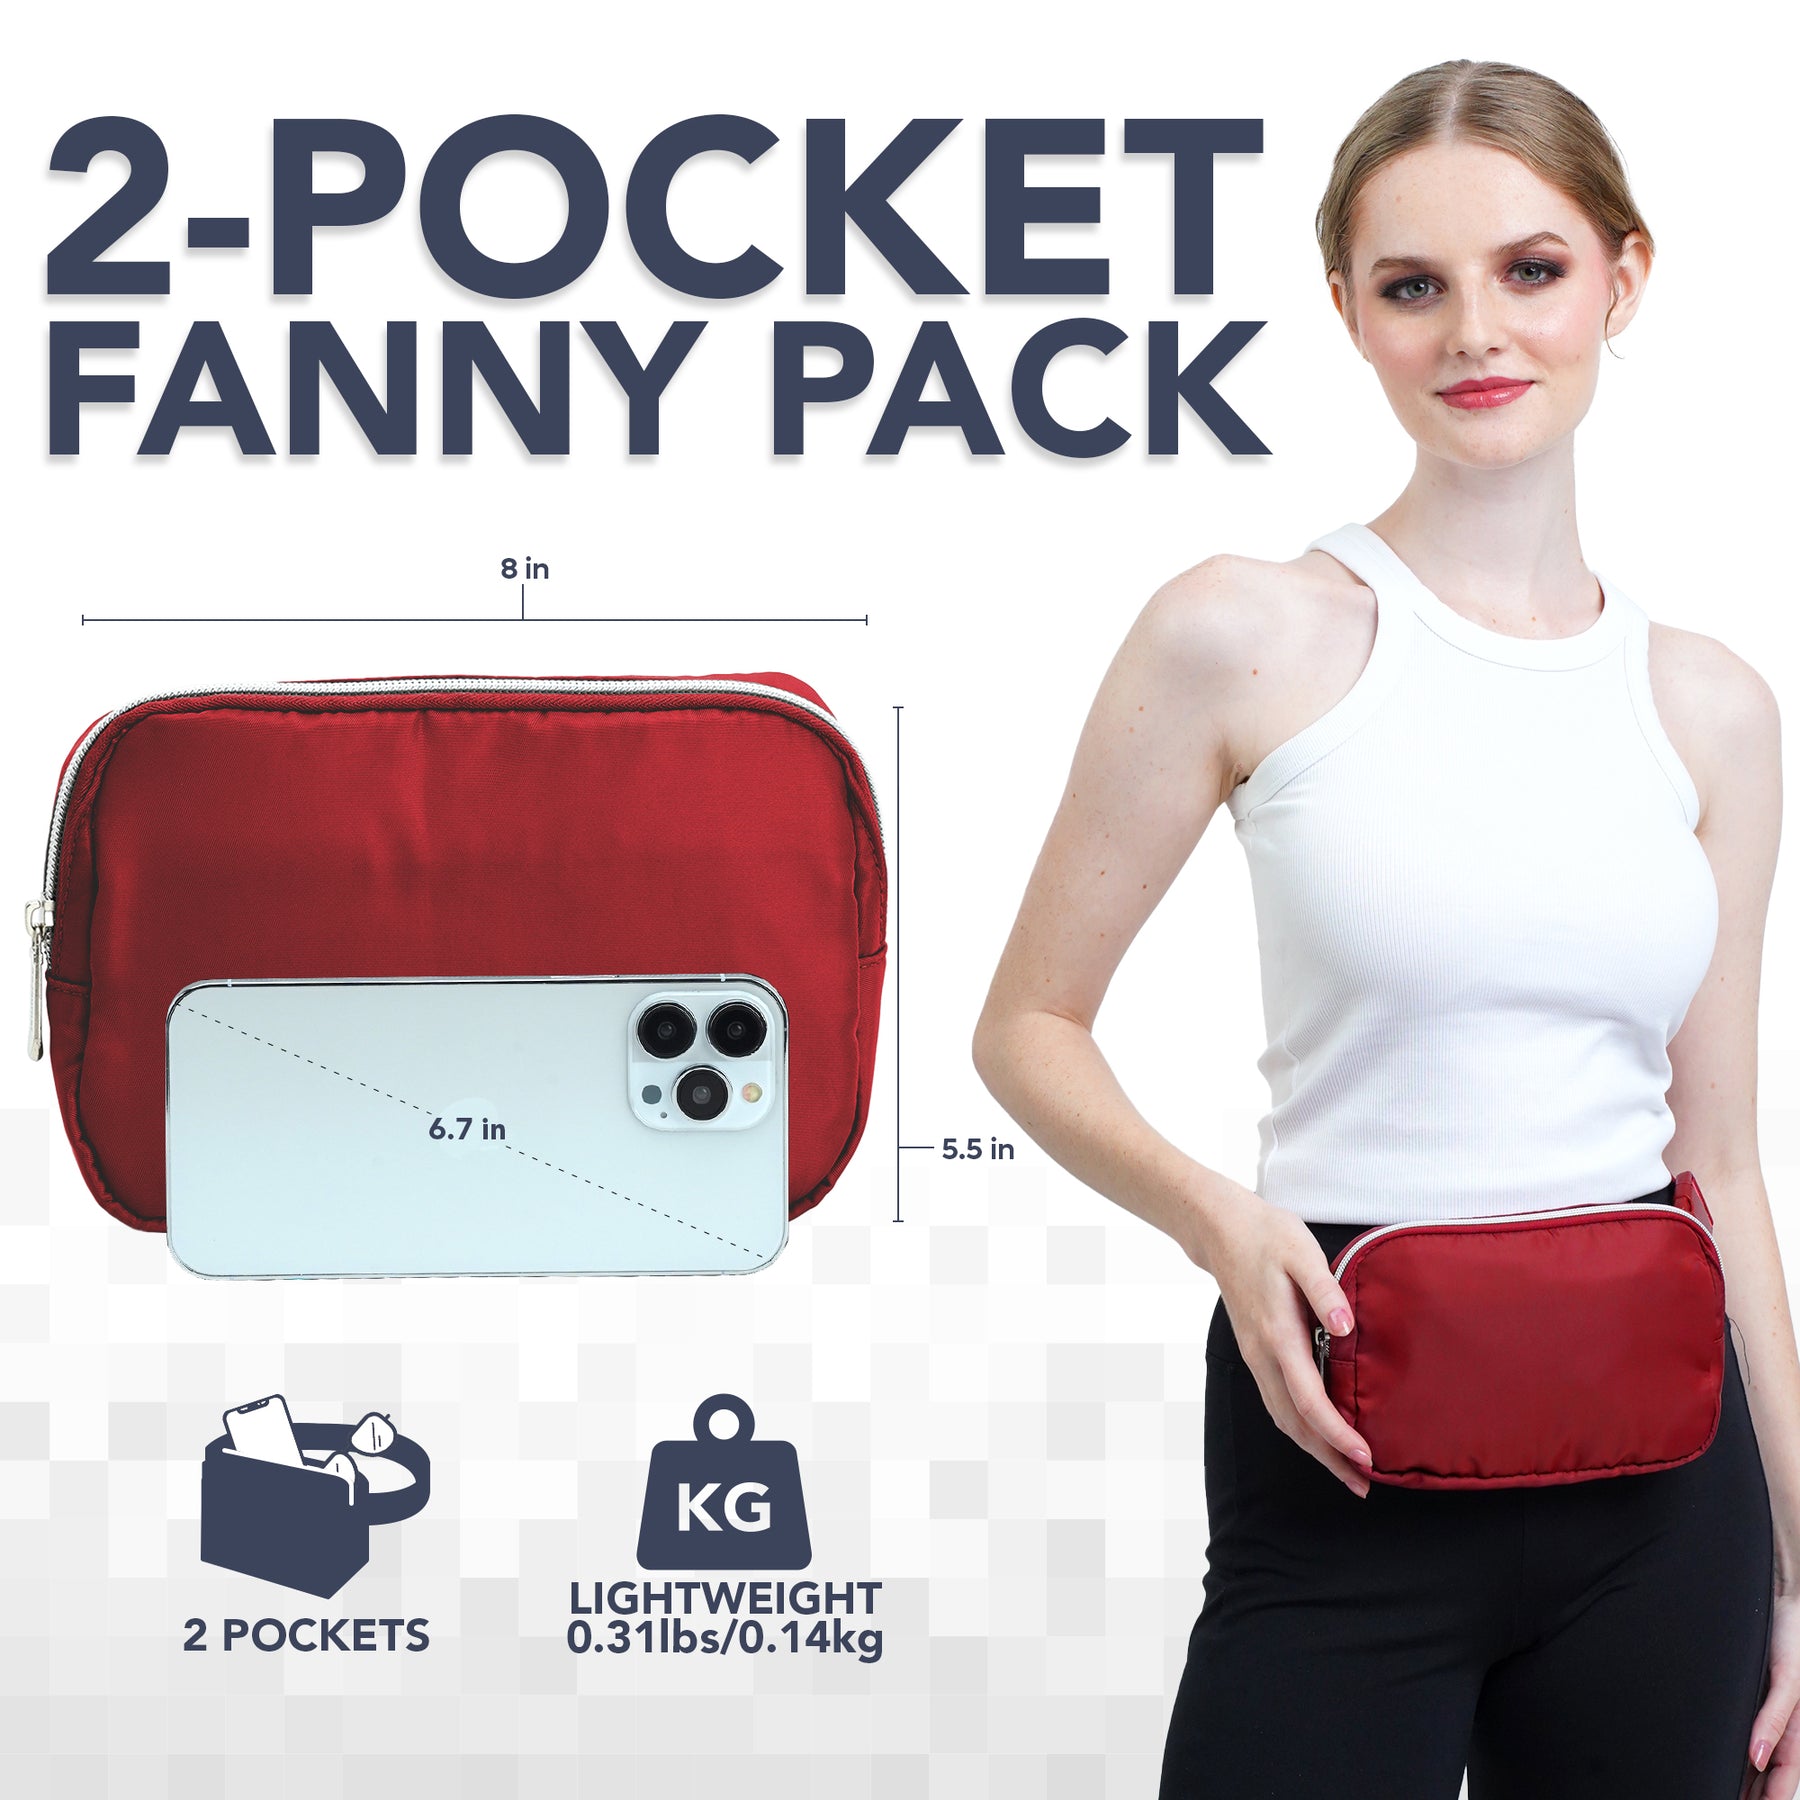 Wine Red Fanny Pack Belt Bag for Women I Cross Body Fanny Packs for Women - Crossbody Bags small Waist Bag Men